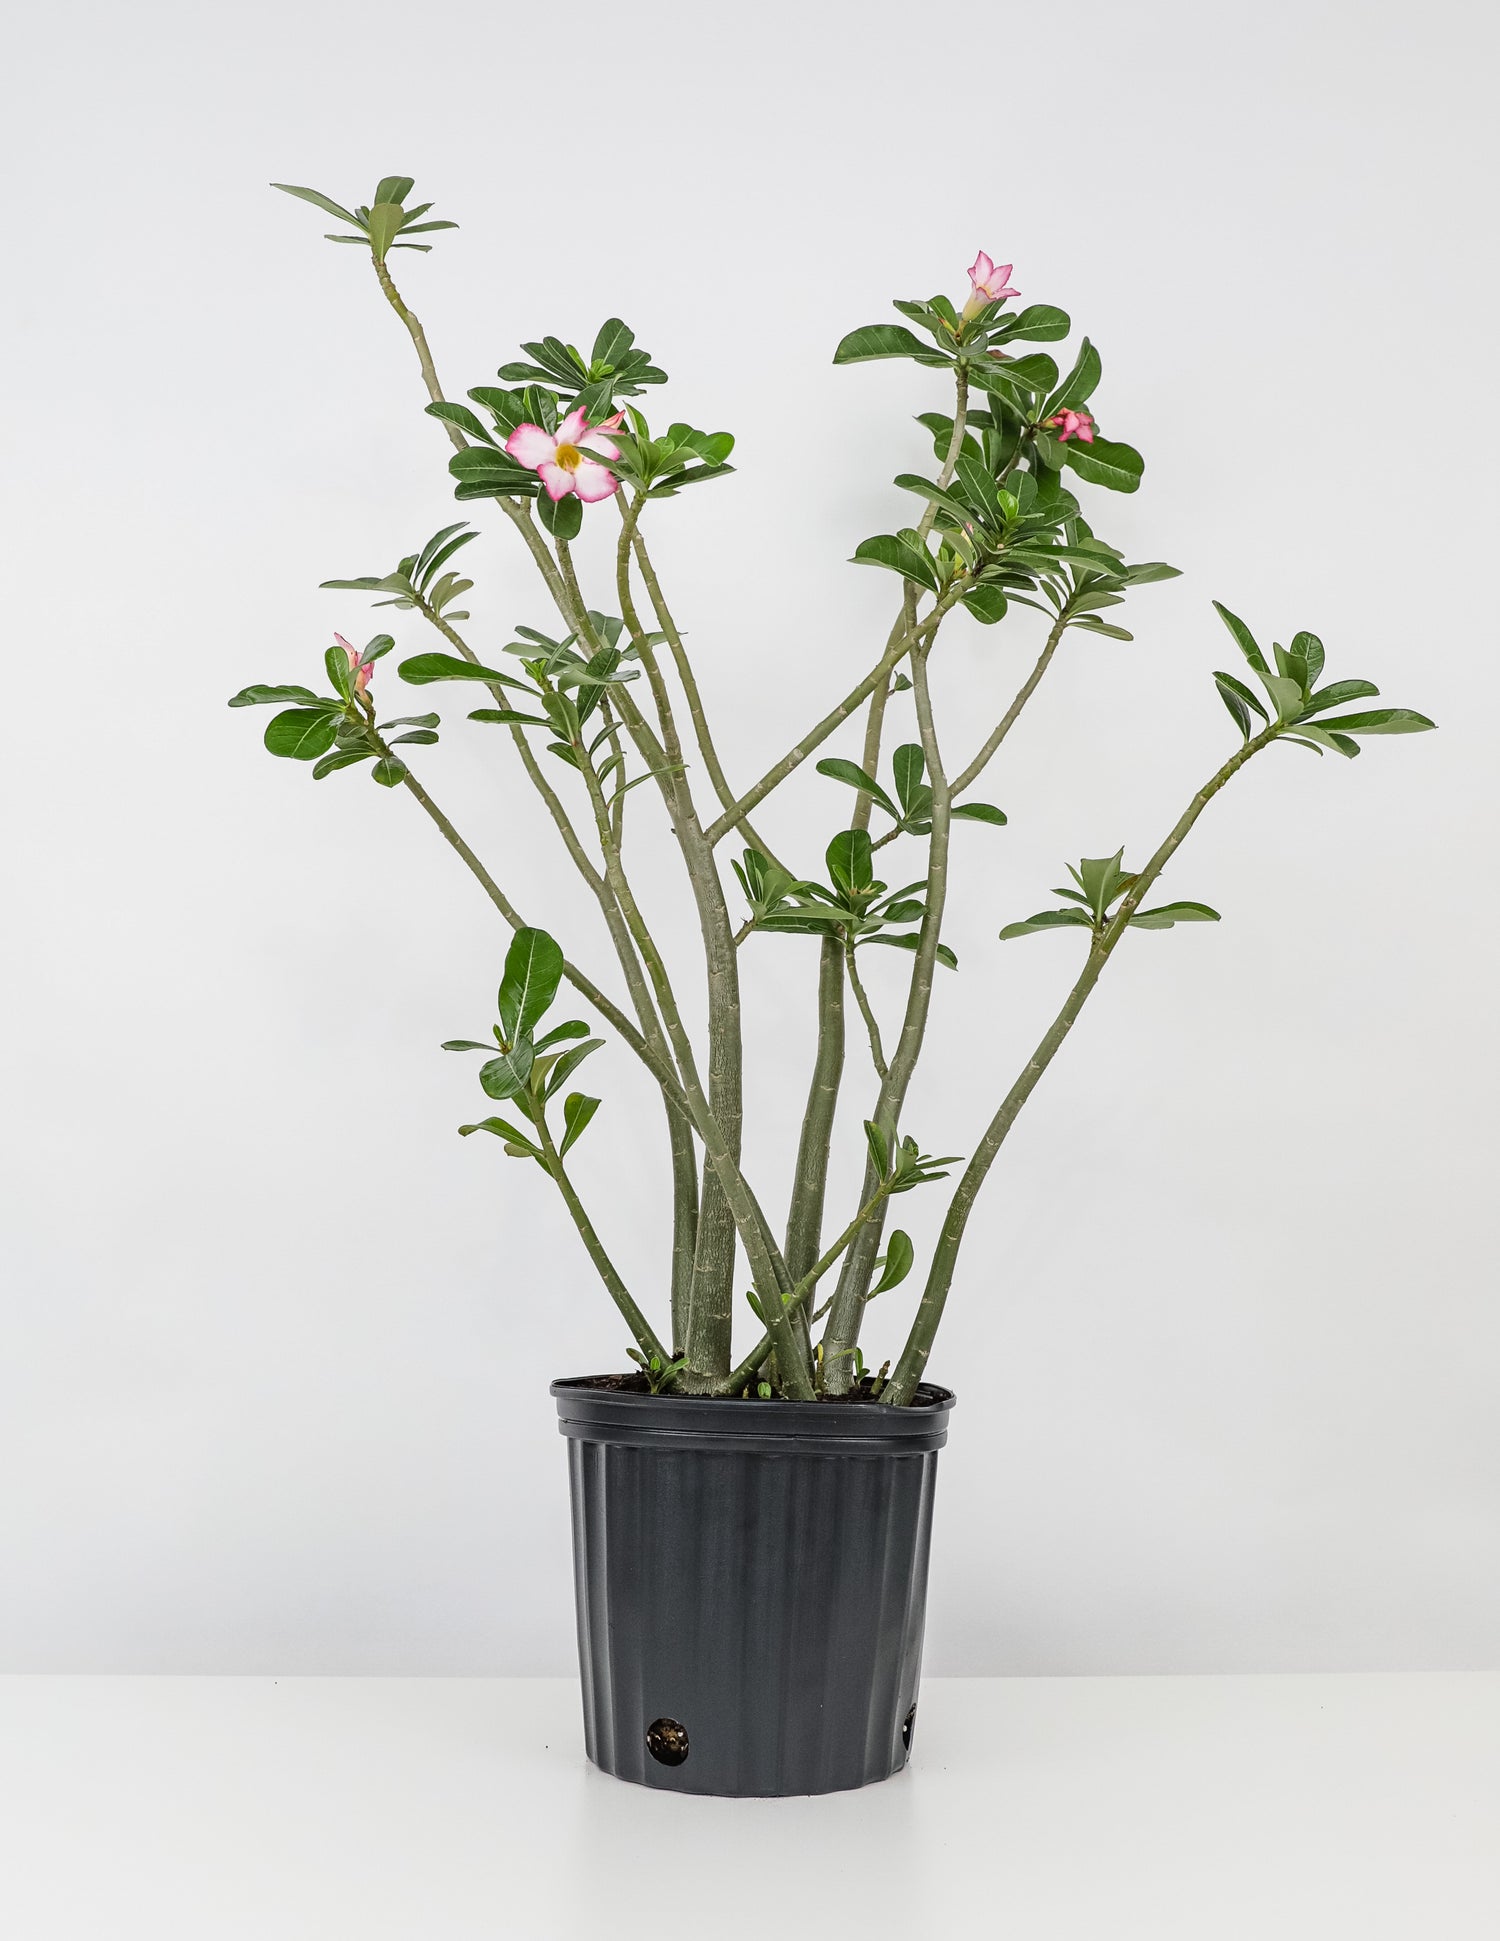 Desert Rose, Adenium obesum, Pink Flowers